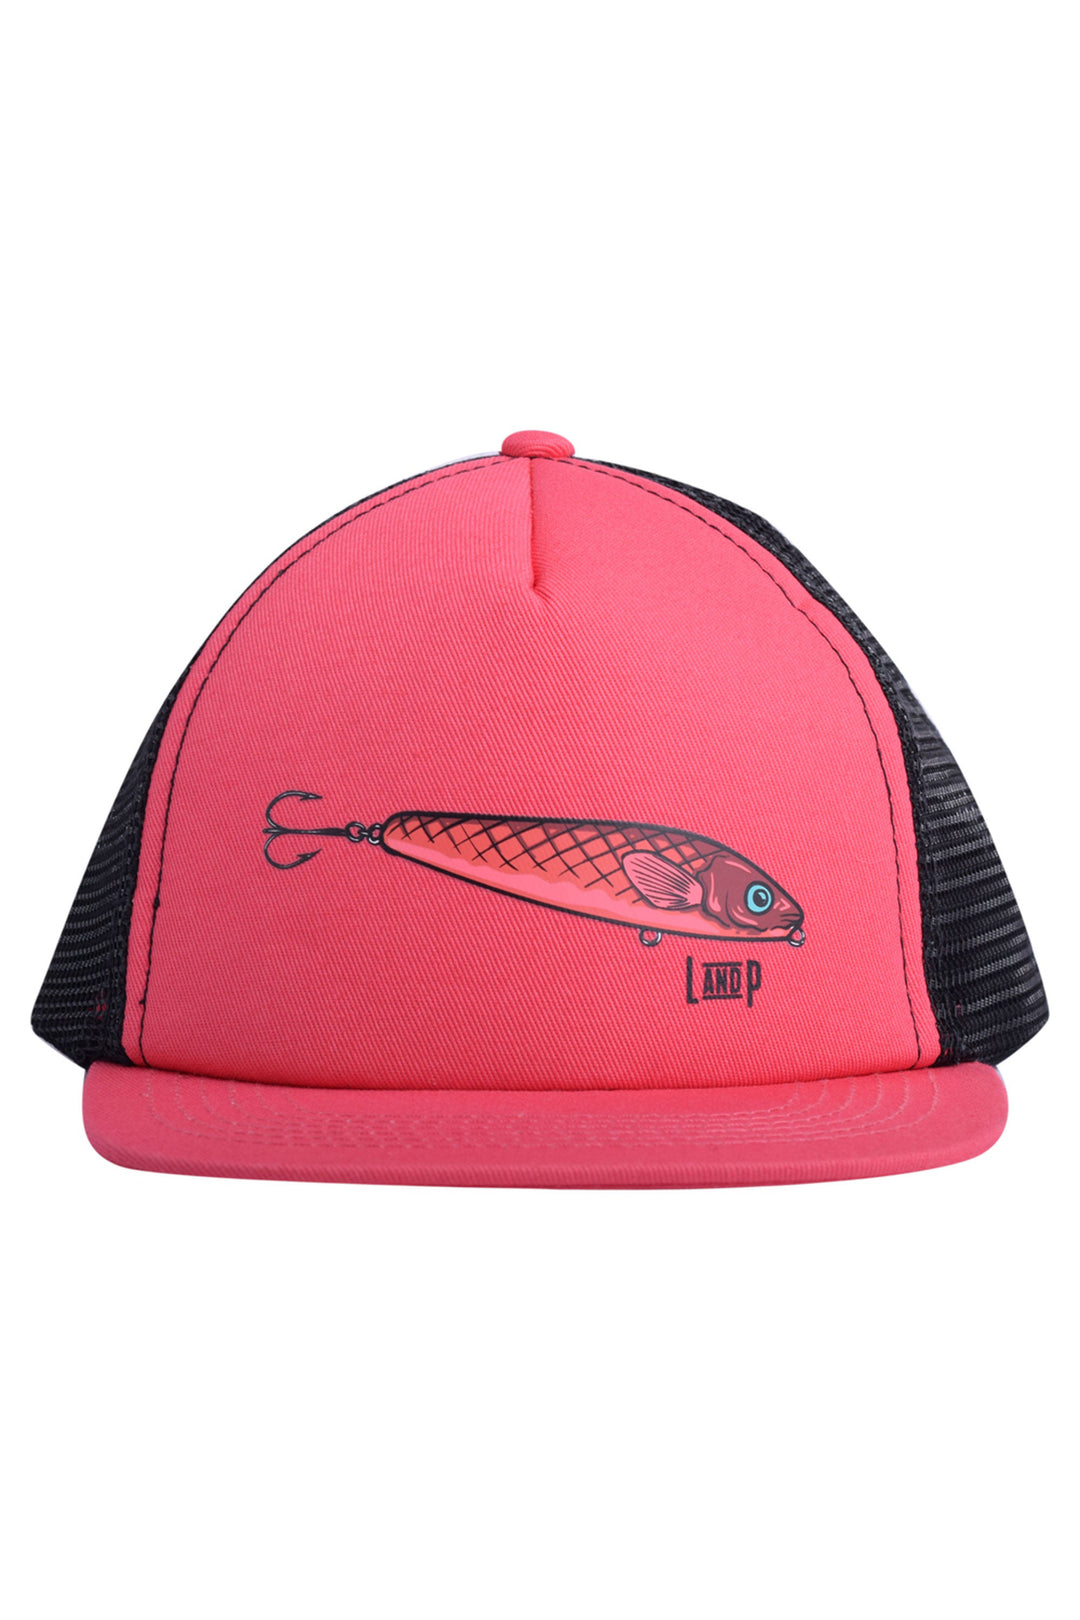 Fish series mesh cap - Fit Simplistic